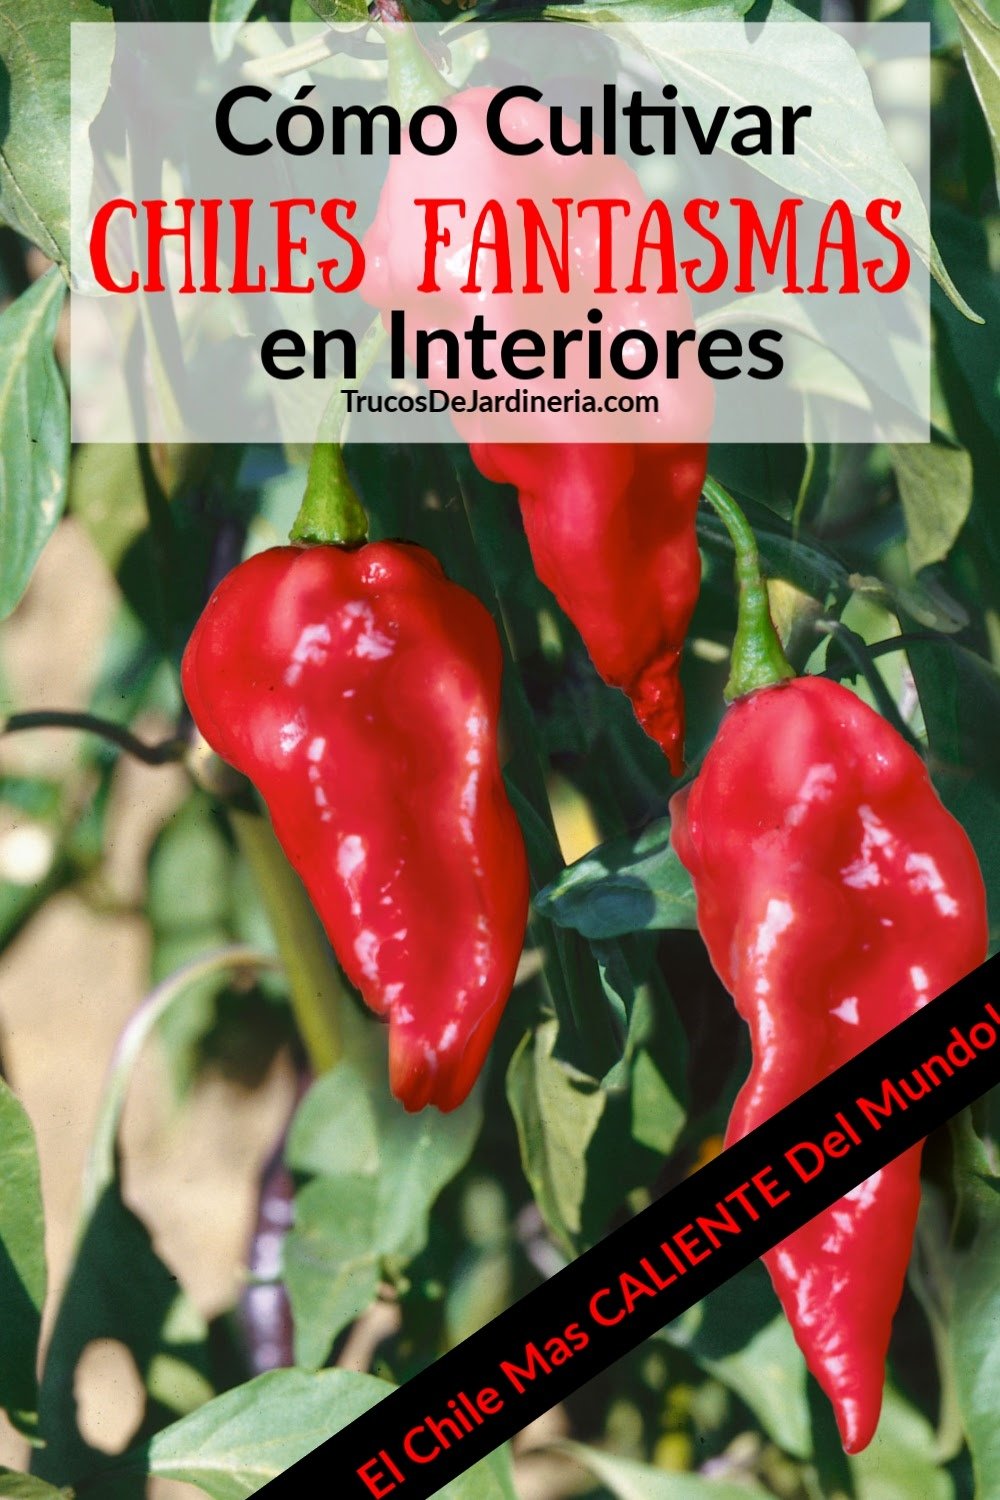 Cómo Cultivar Chiles Fantasmas en Interiores